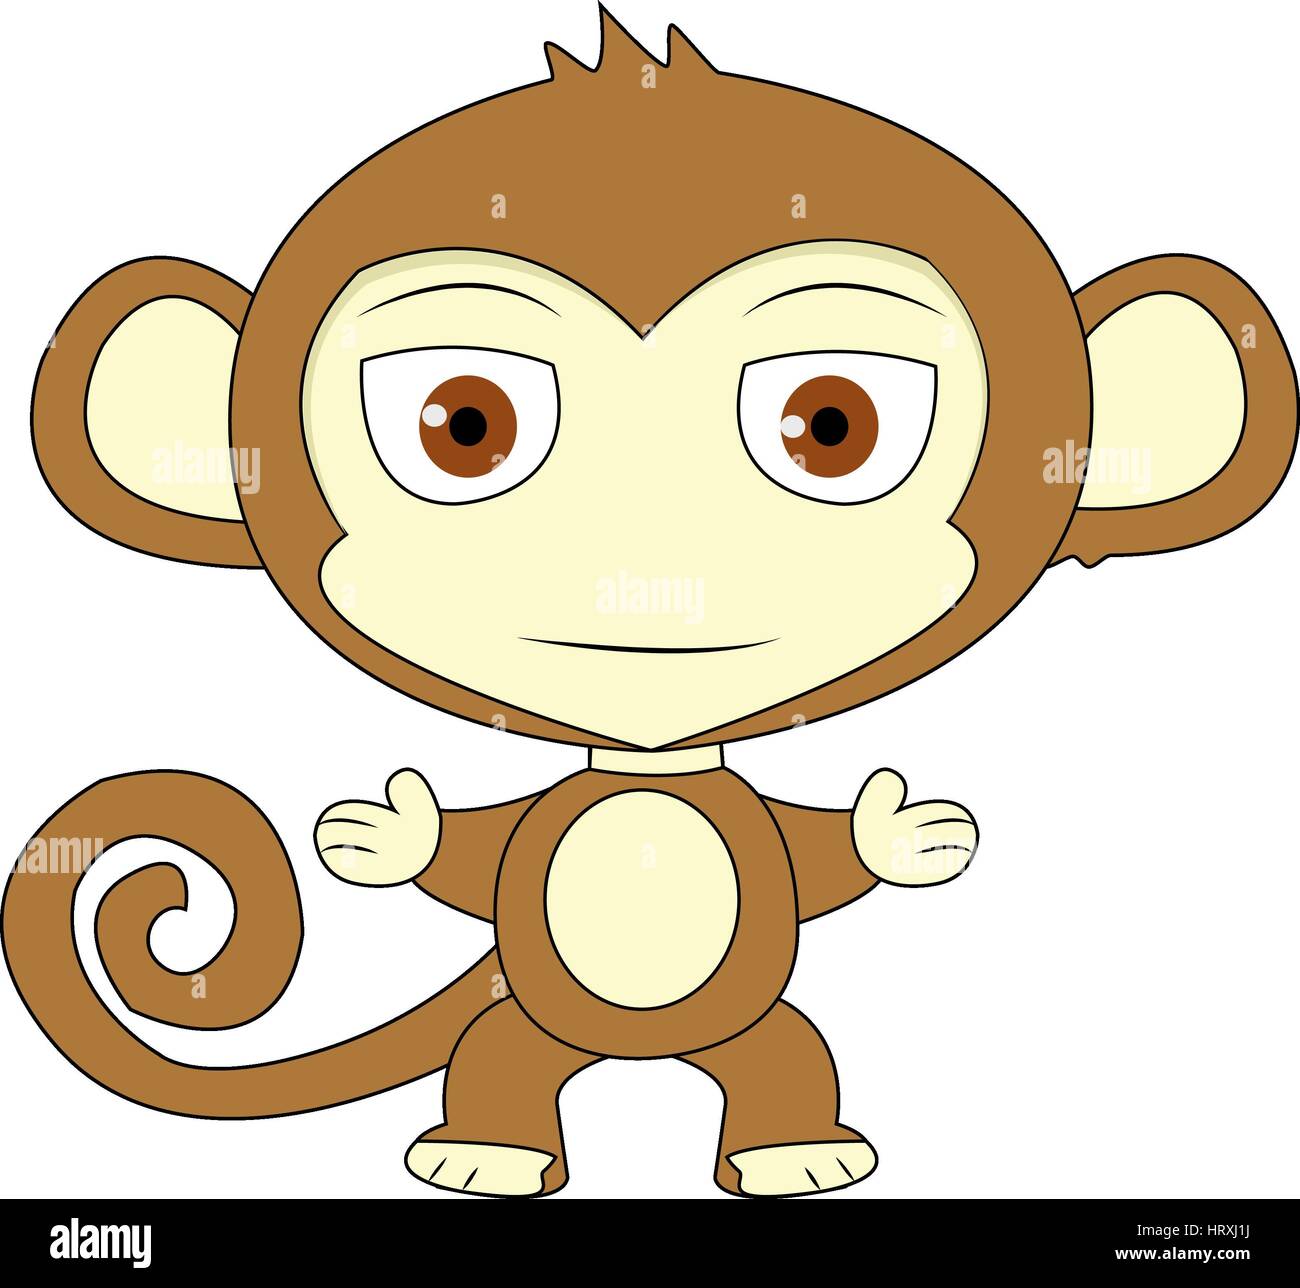 Scimmia in personaggio dei fumetti. Vettore scimmia fumetto illustrazione Foto Stock